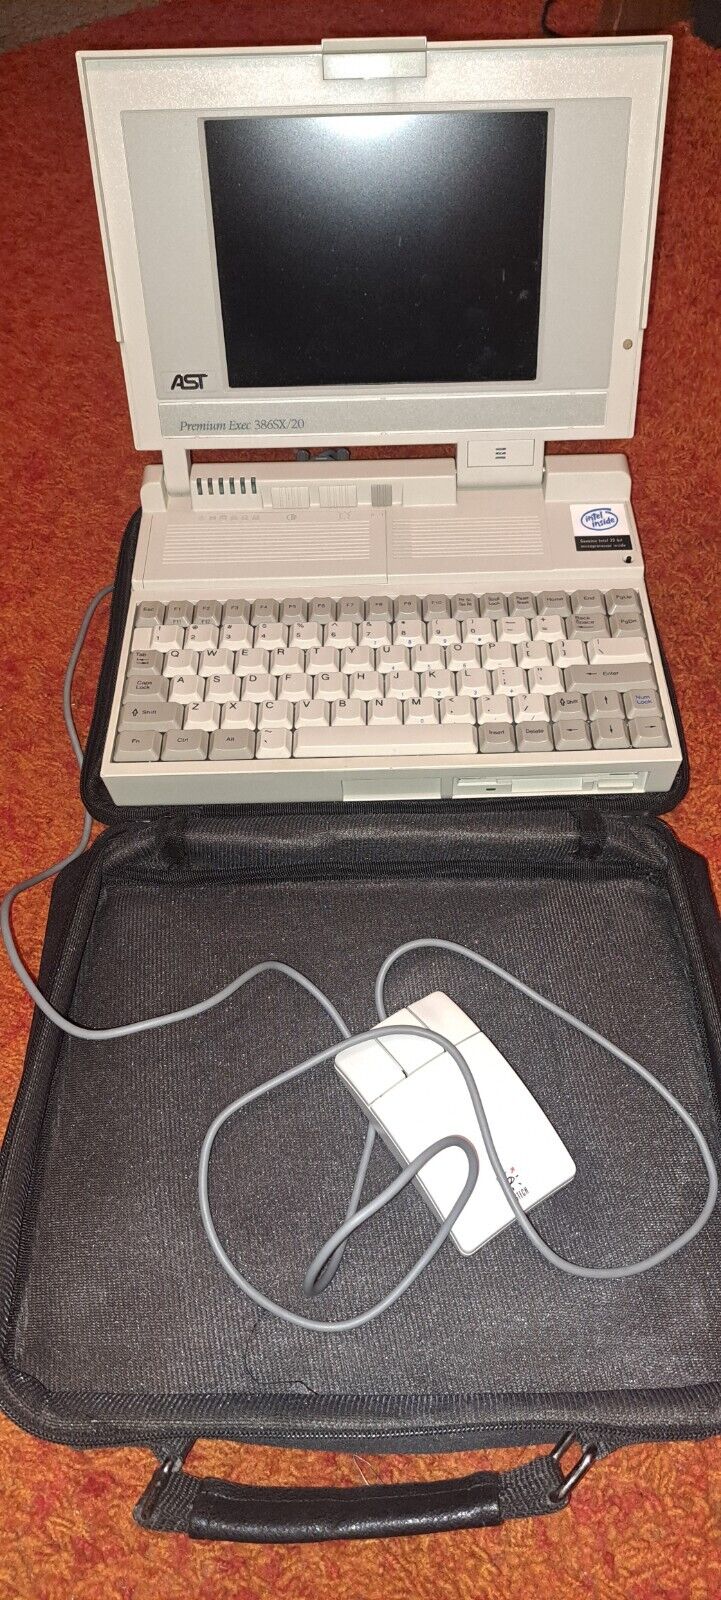 Vintage AST Premium Exec 386SX/20  Laptop Computer UNTESTED